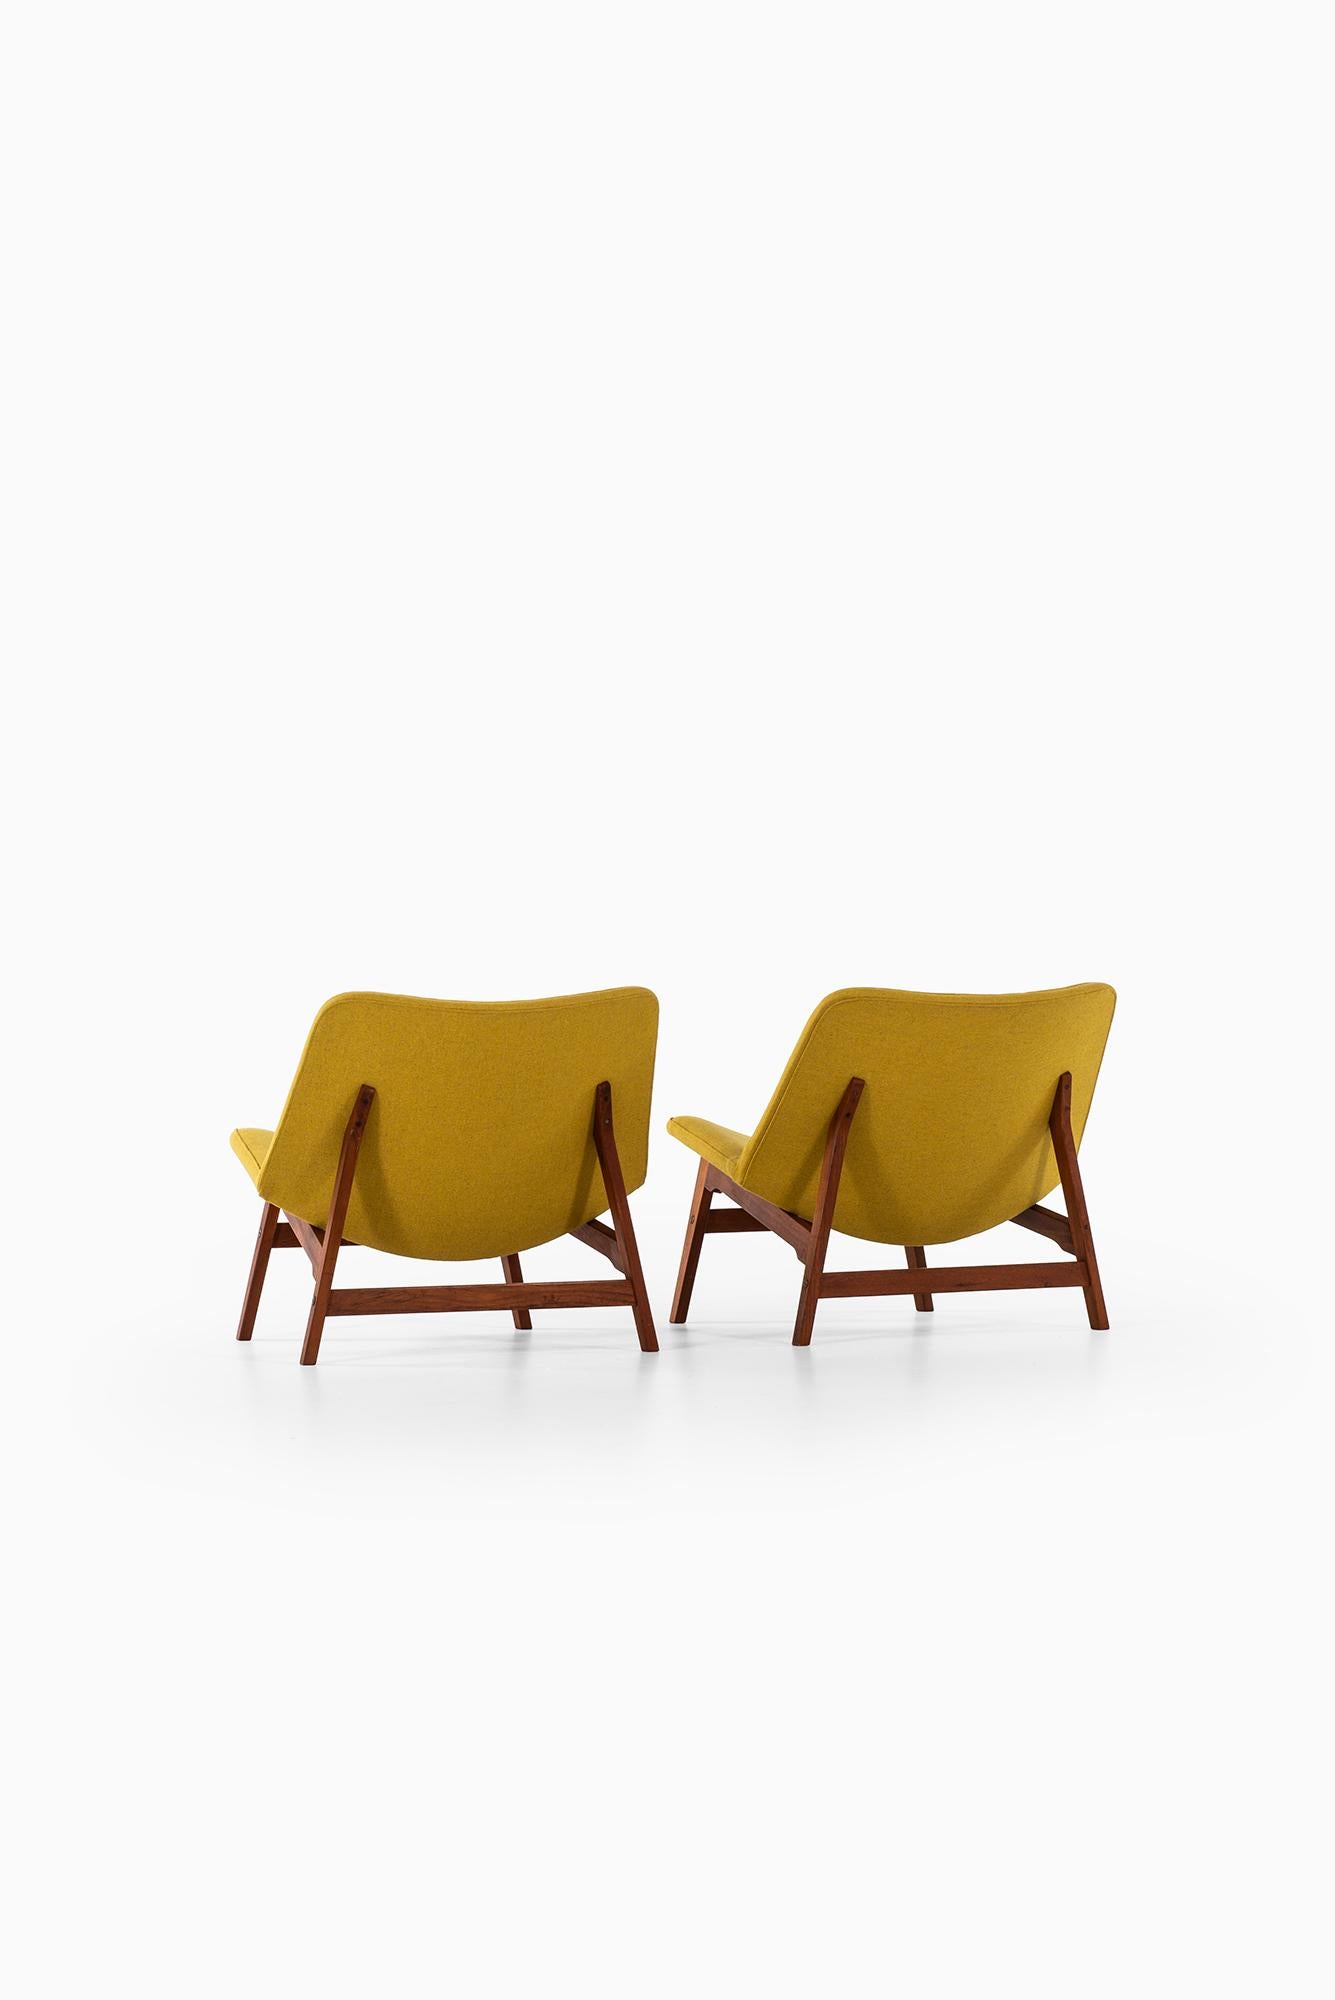 Scandinavian Modern Yngve Ekström Easy Chairs by Ese-Möbler in Sweden For Sale